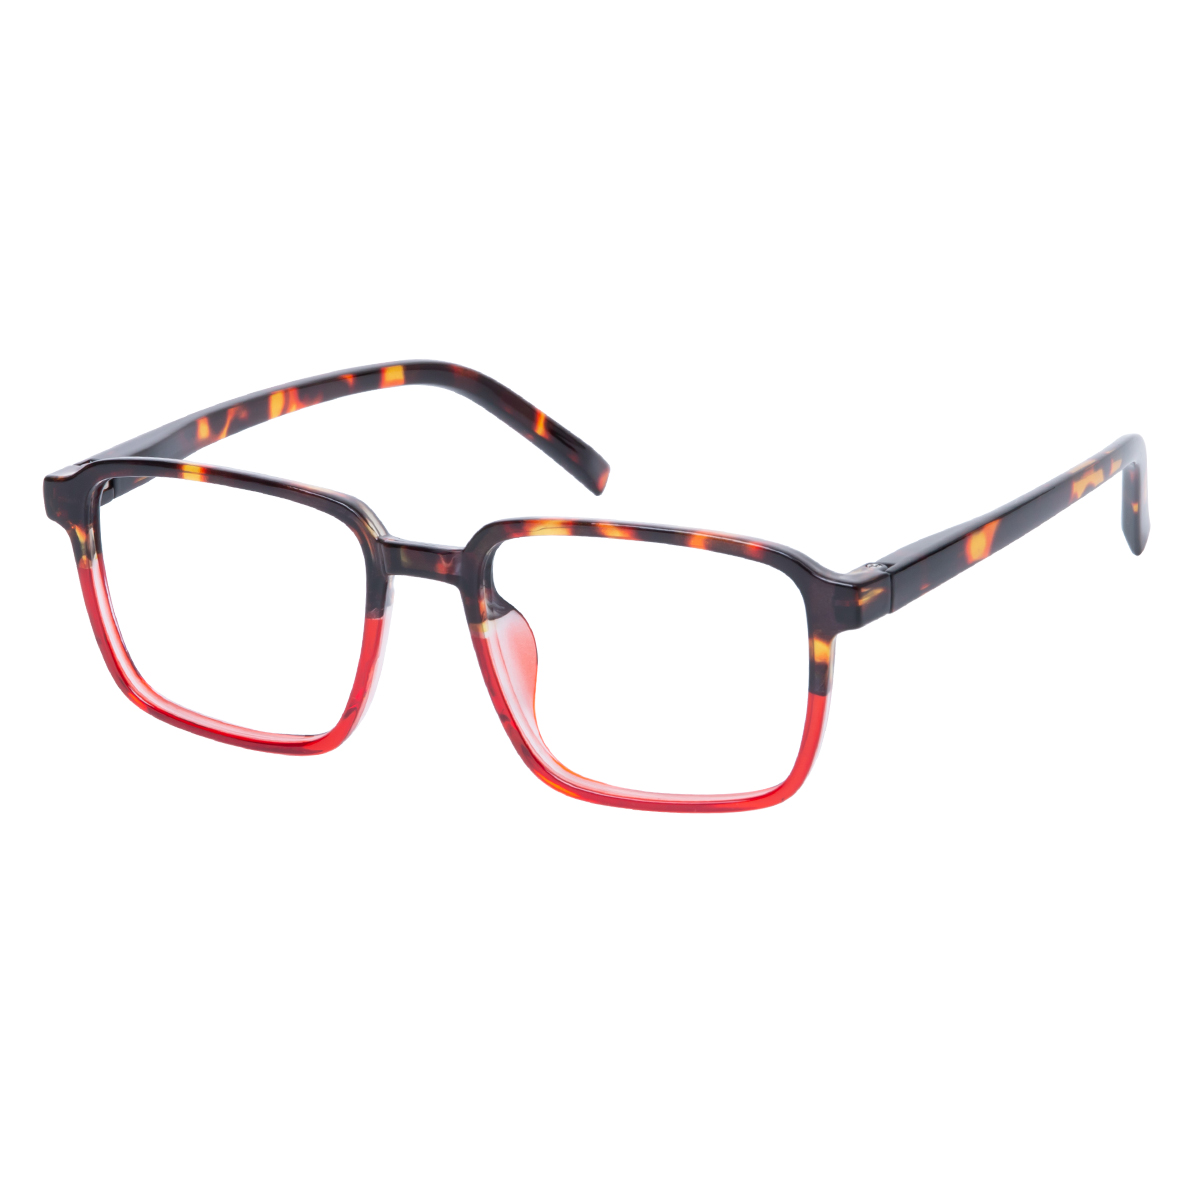 Marlowe - Square Tortoiseshell-Red Reading Glasses for Men & Women